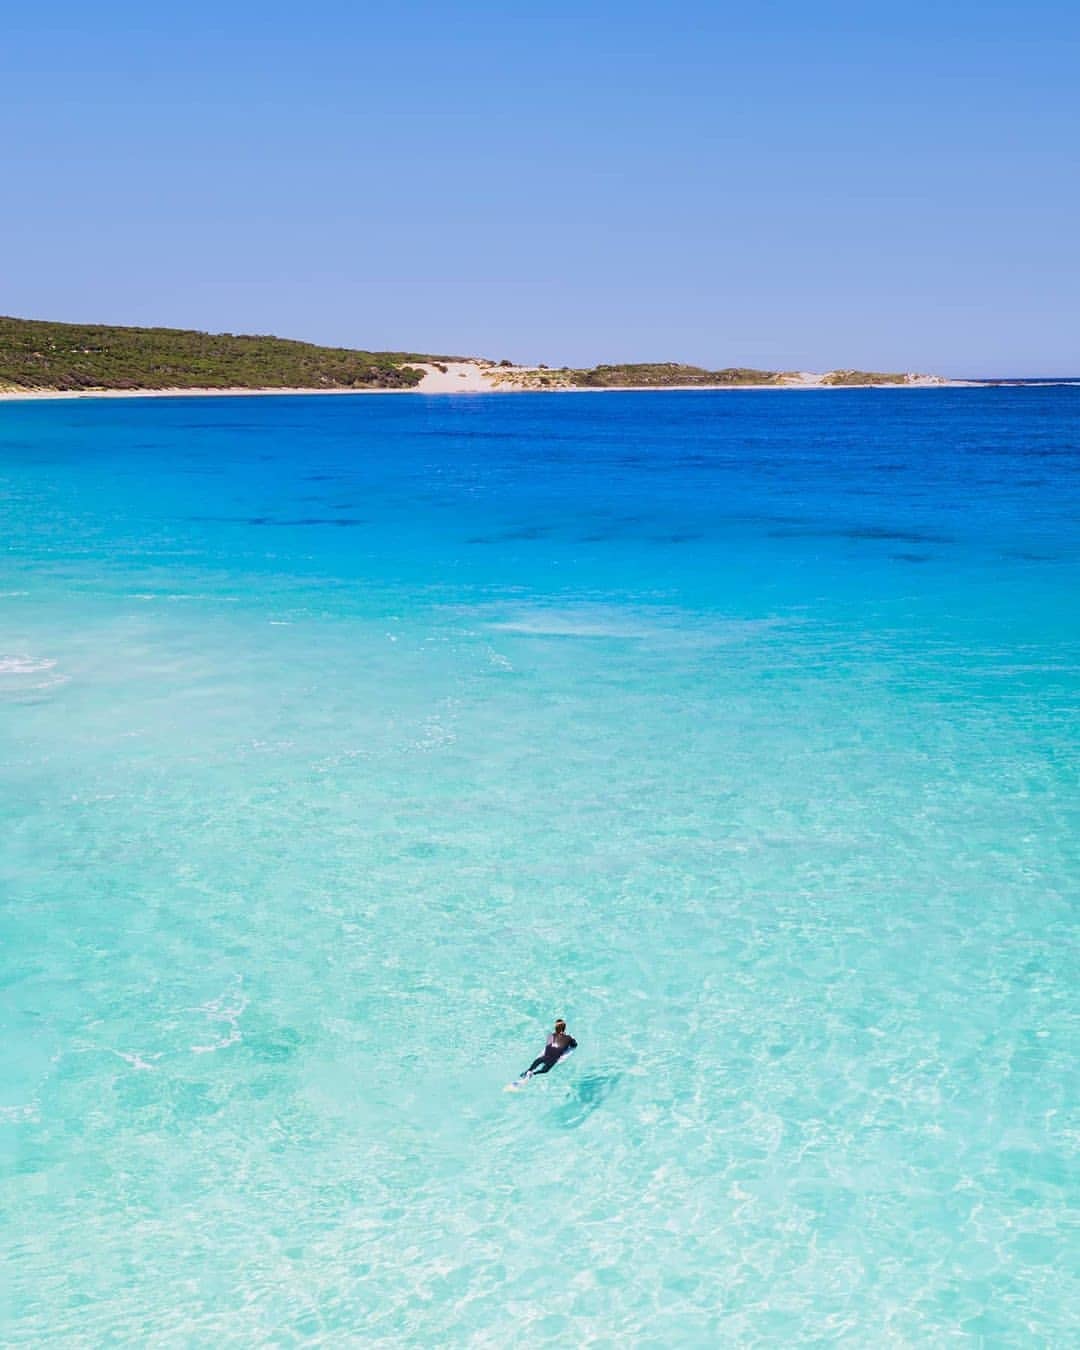 のんびり ばぶる パース 西オーストラリア州政府観光局 大自然のパレット ブルーをご紹介 西オーストラリア のブルーは インド洋と南極海の美しい海の色 白い砂と海の青が絶景を彩ります Via Ig 1枚目 ニンガルー Cjmaddock 2枚目